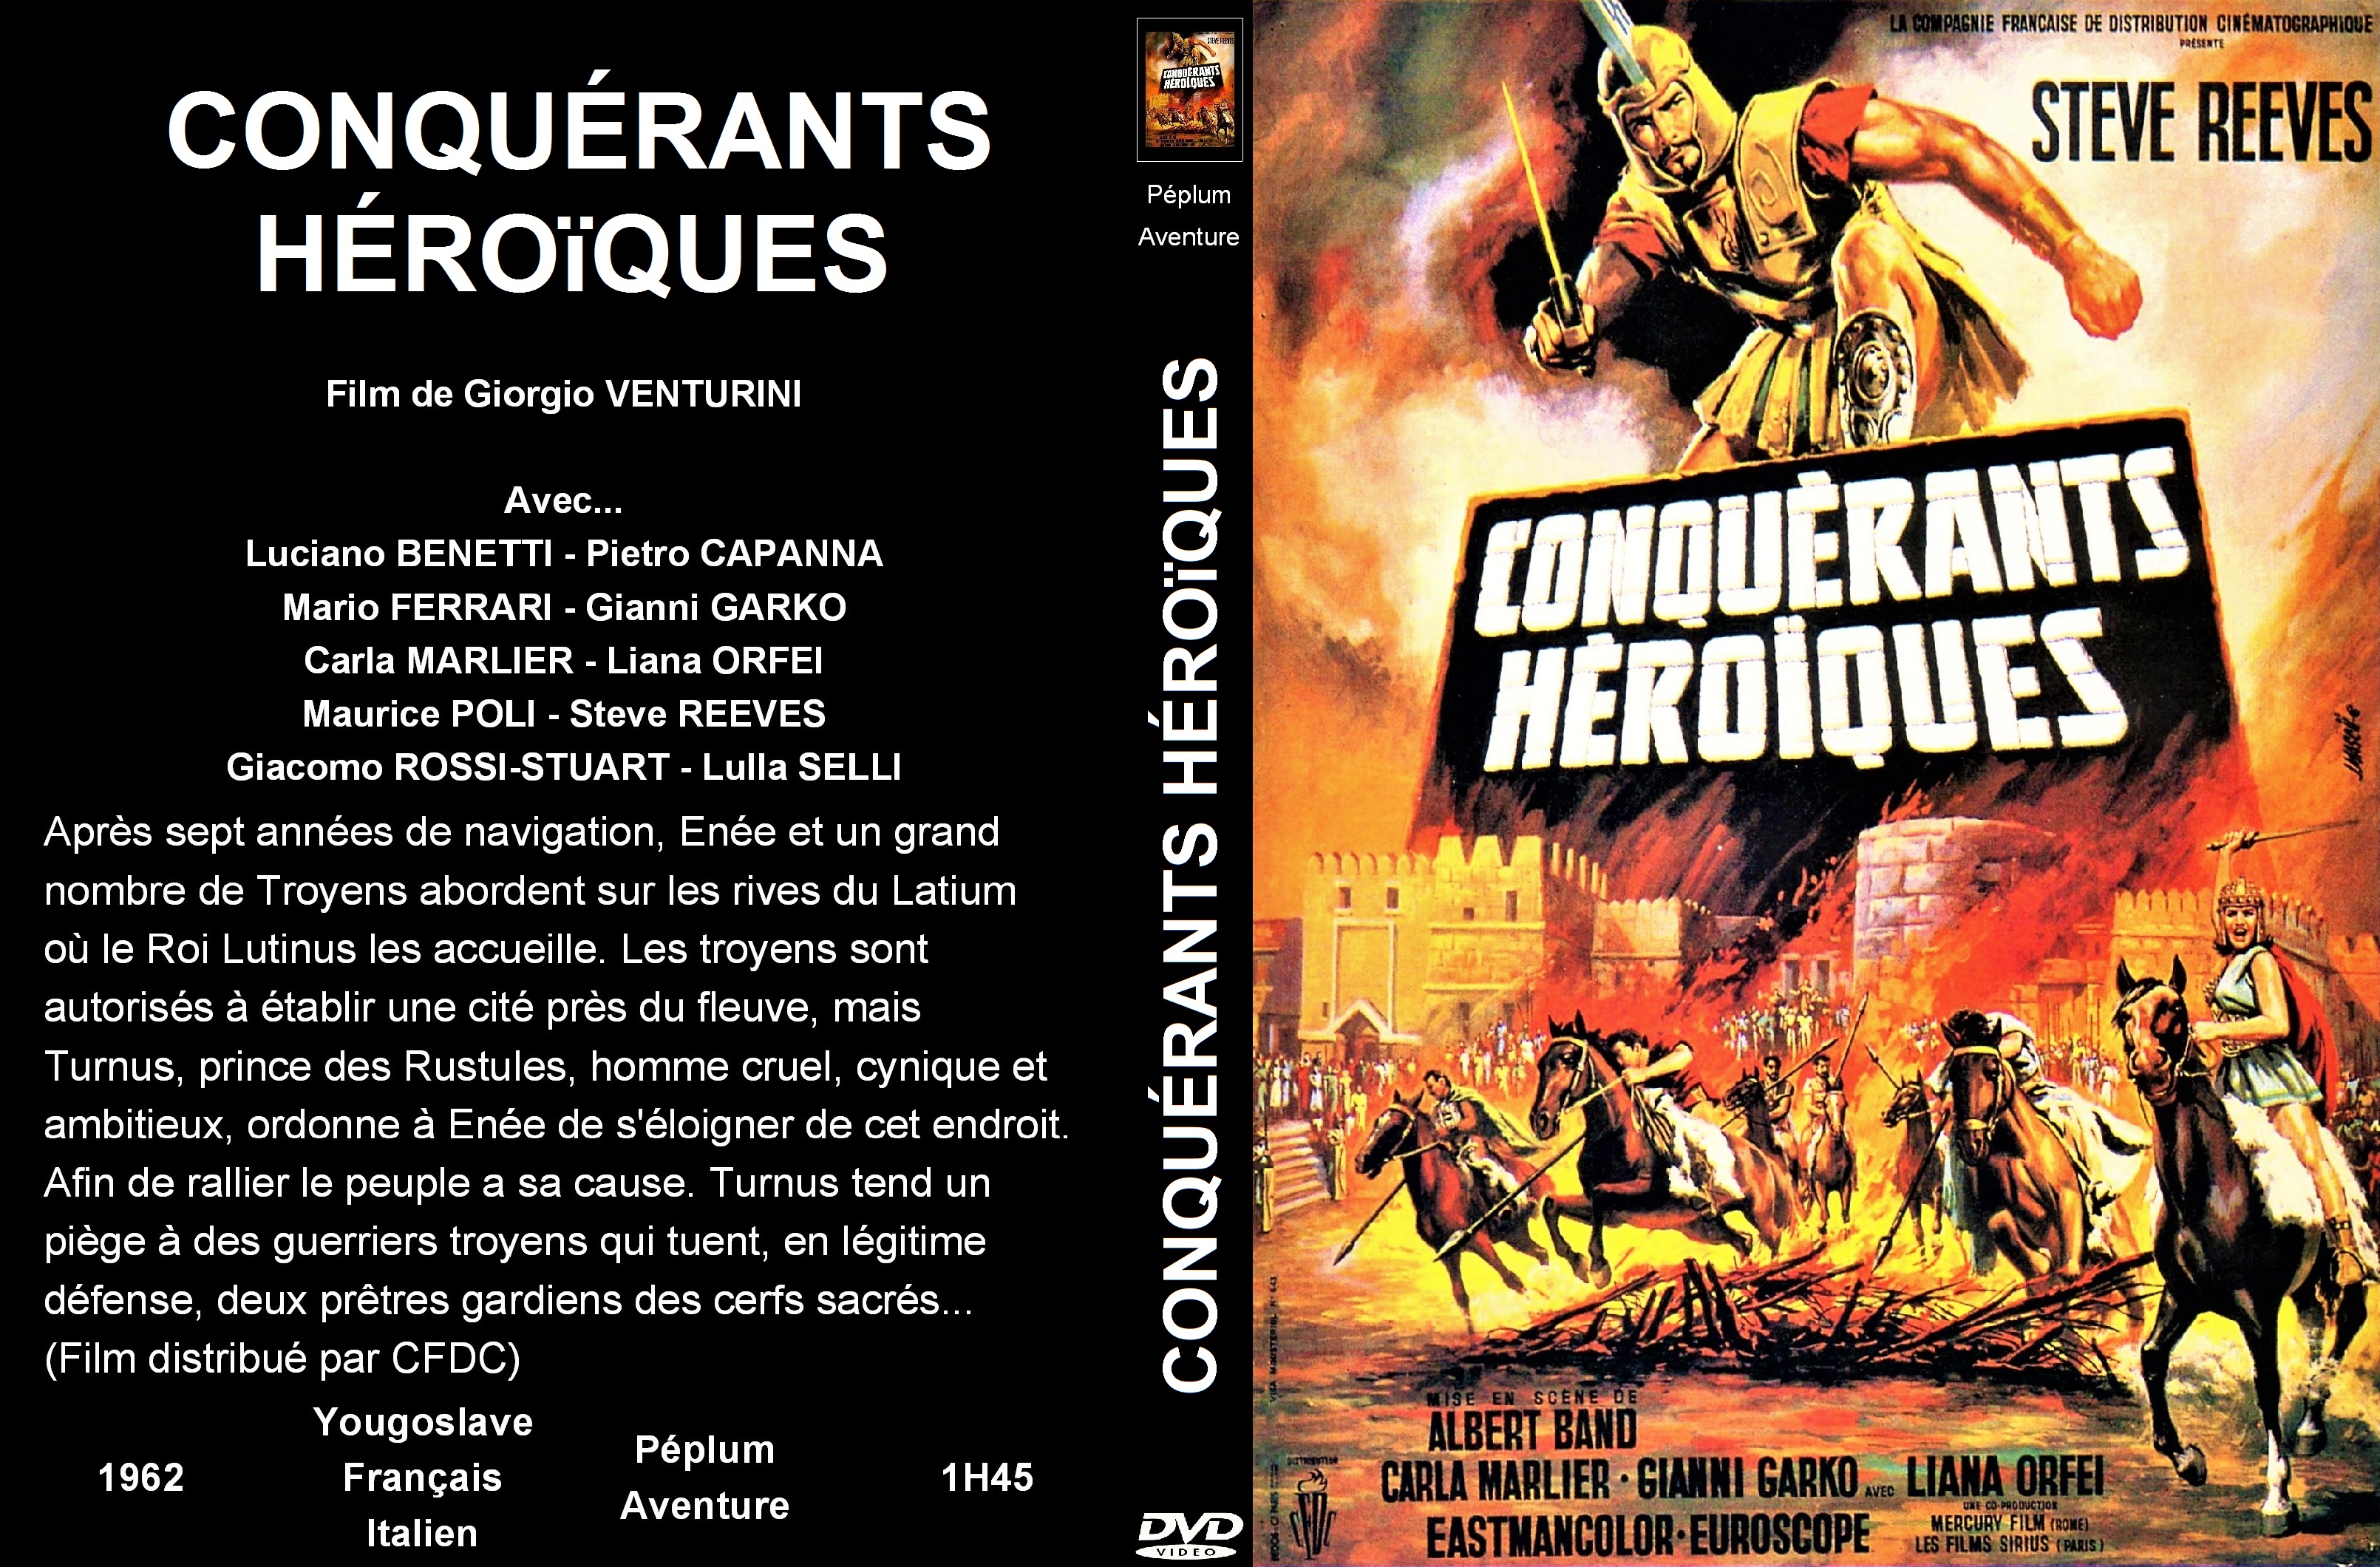 Jaquette DVD Conquerants heroiques custom